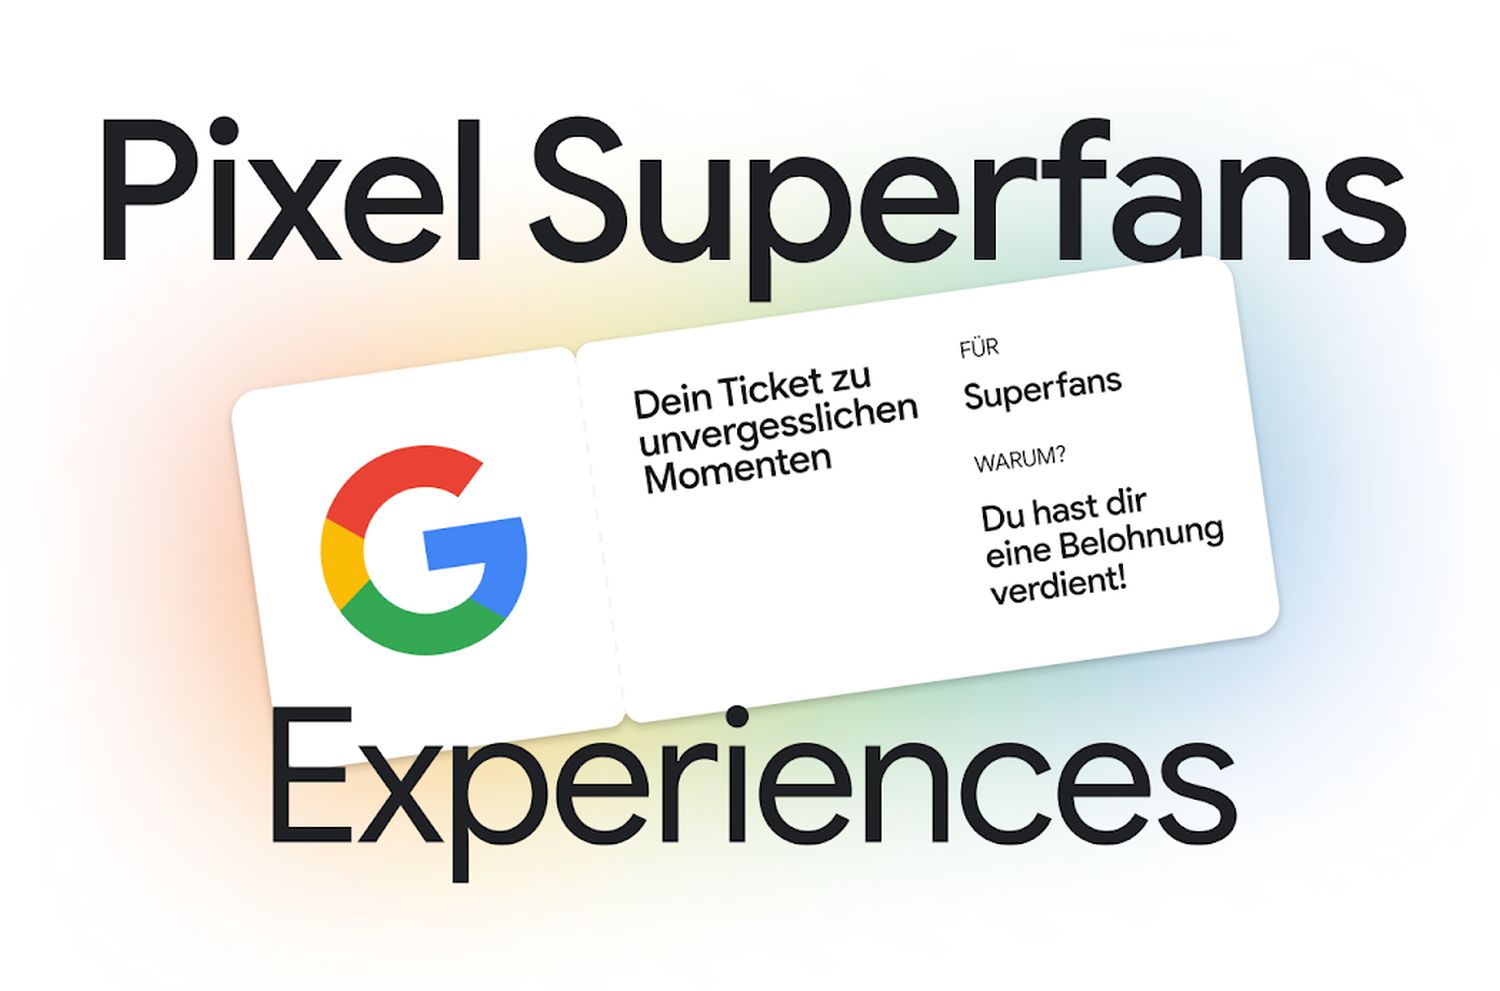 Pixel-Superfans-Google-startet-die-Fan-Community-in-Deutschland-bringt-exklusive-Vorteile-und-Rabatte